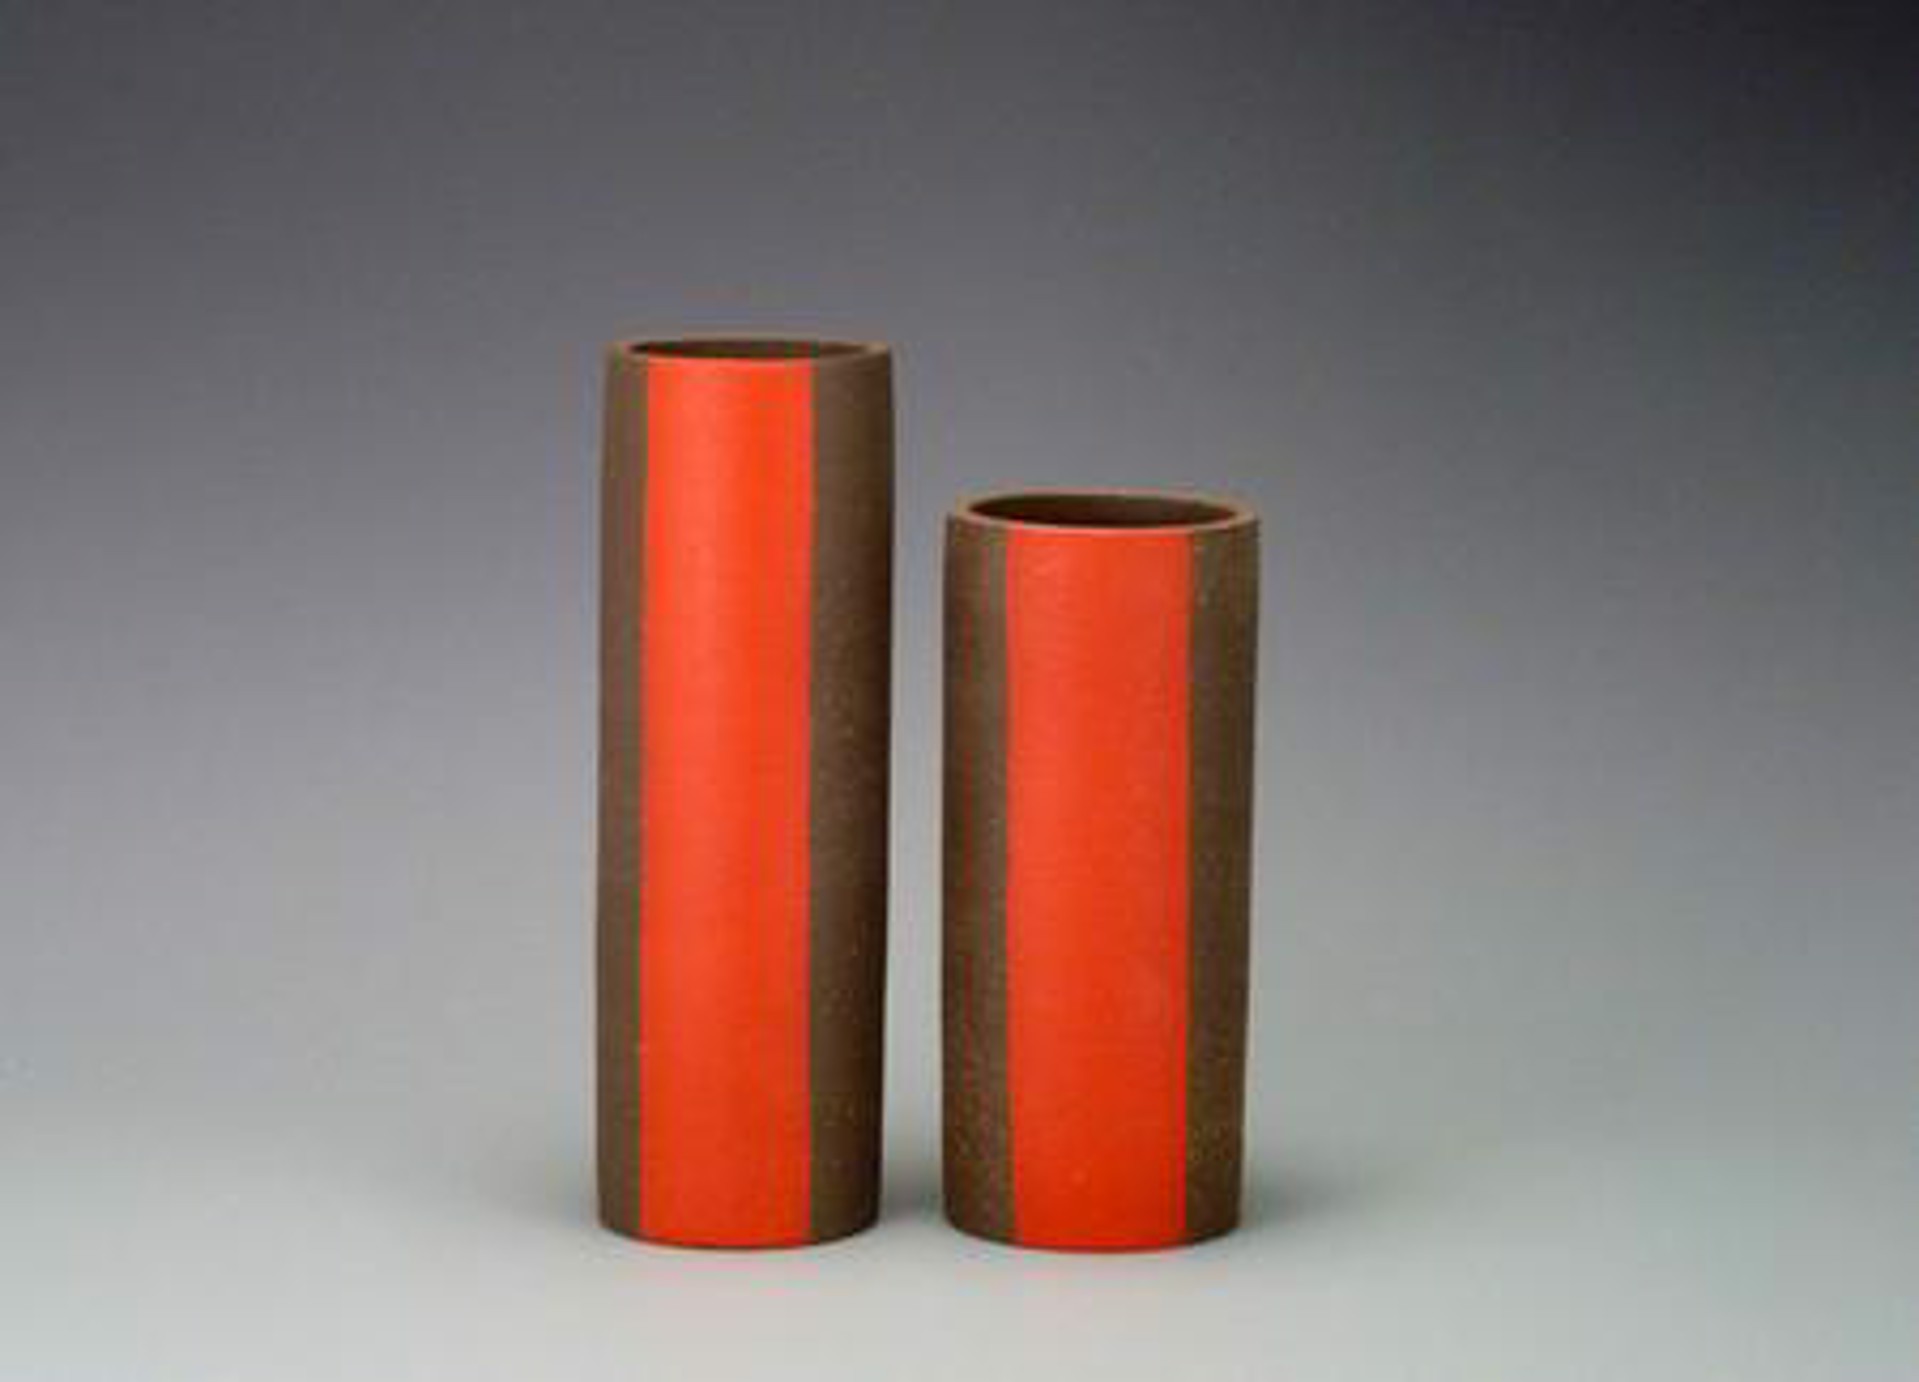 Red Band Vase by Tara Dawley